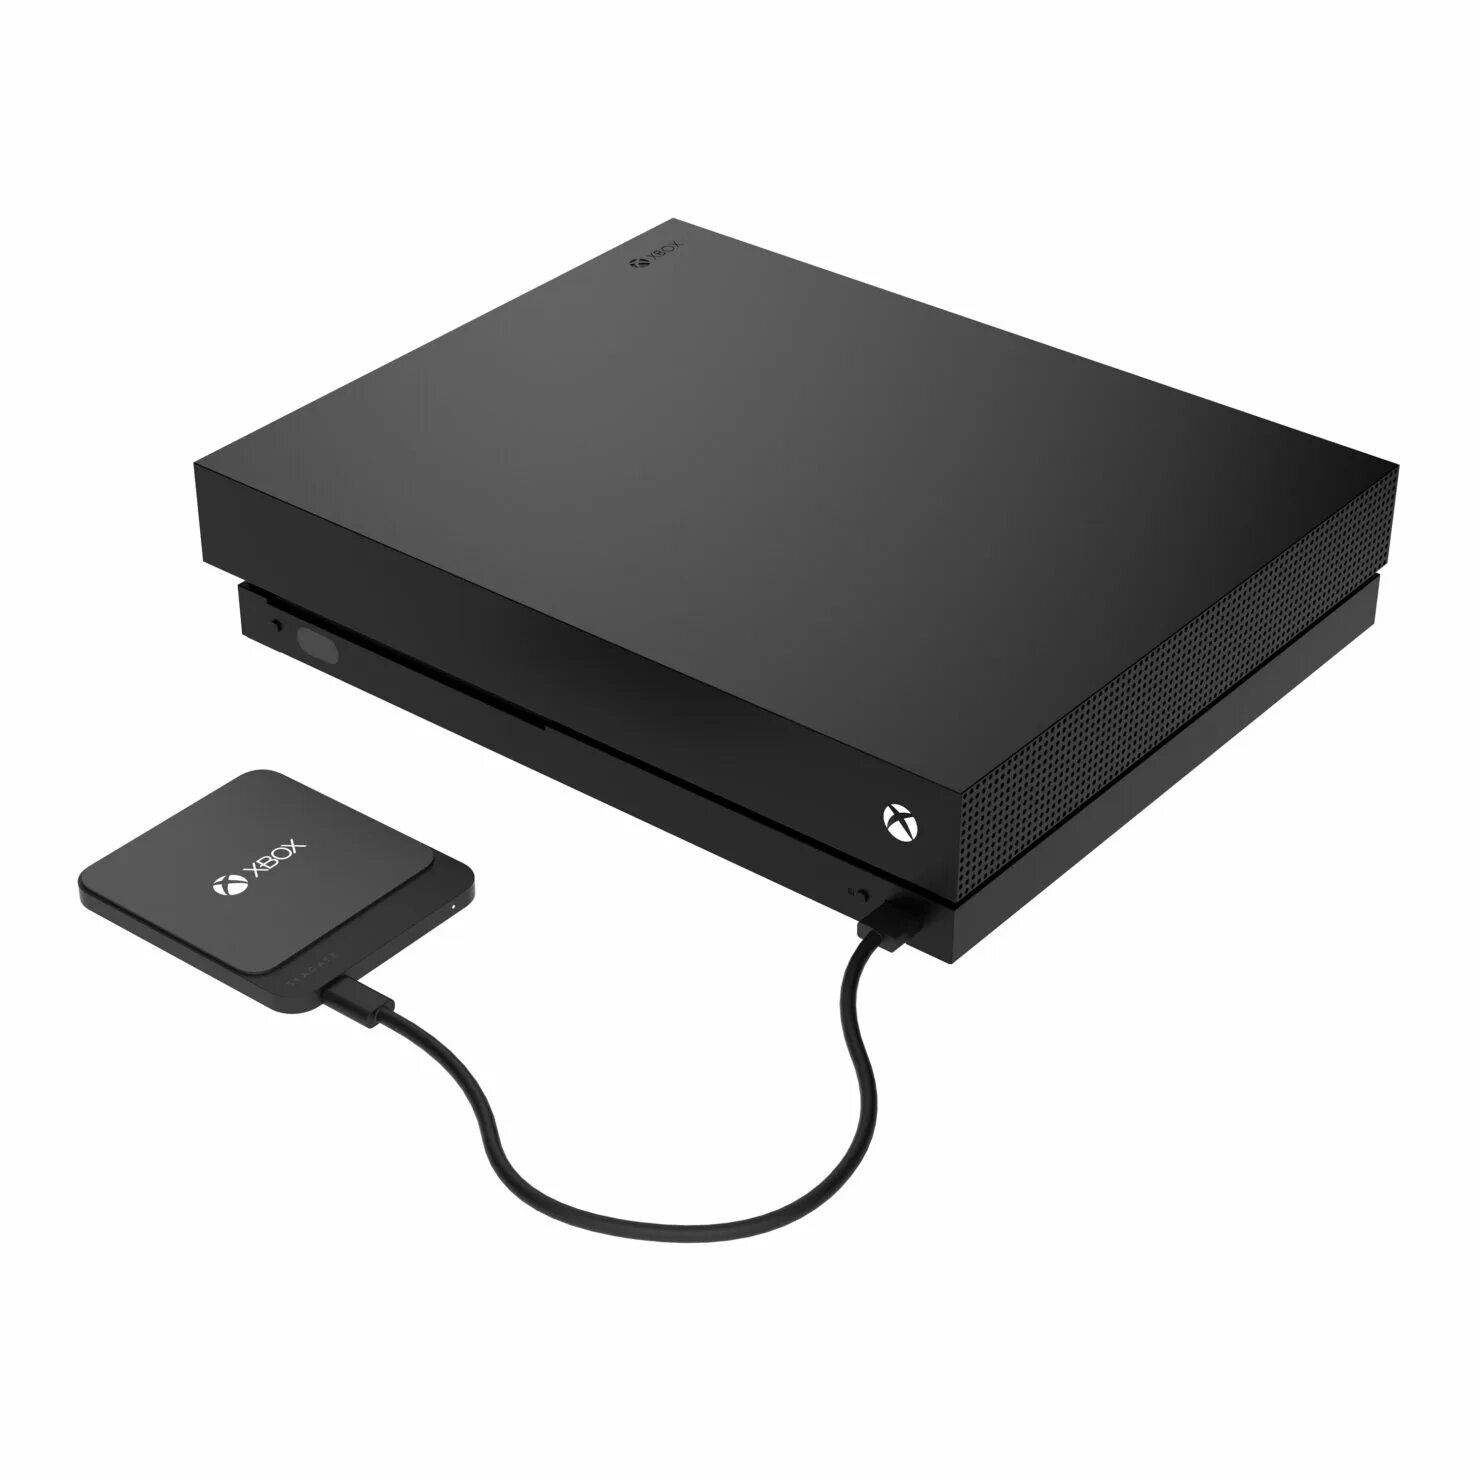 Память для xbox series x. Xbox Series x SSD Seagate. Xbox внешний SSD диск 1 ТБ. Xbox one x HDD. Ссд сеагейт.